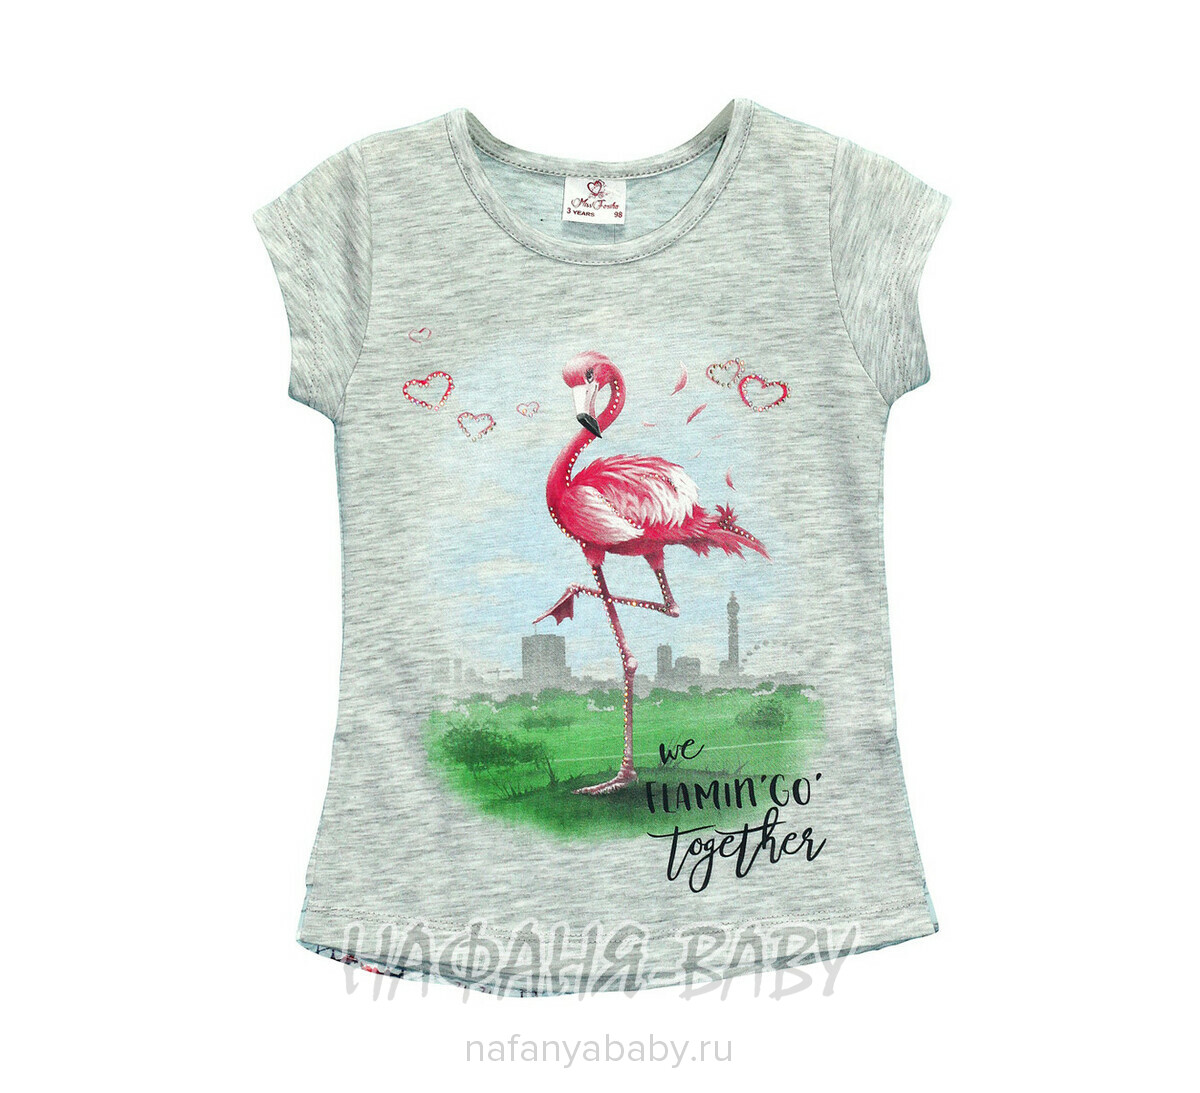 Детская футболка Miss Feriha, купить в интернет магазине Нафаня. арт: 705.